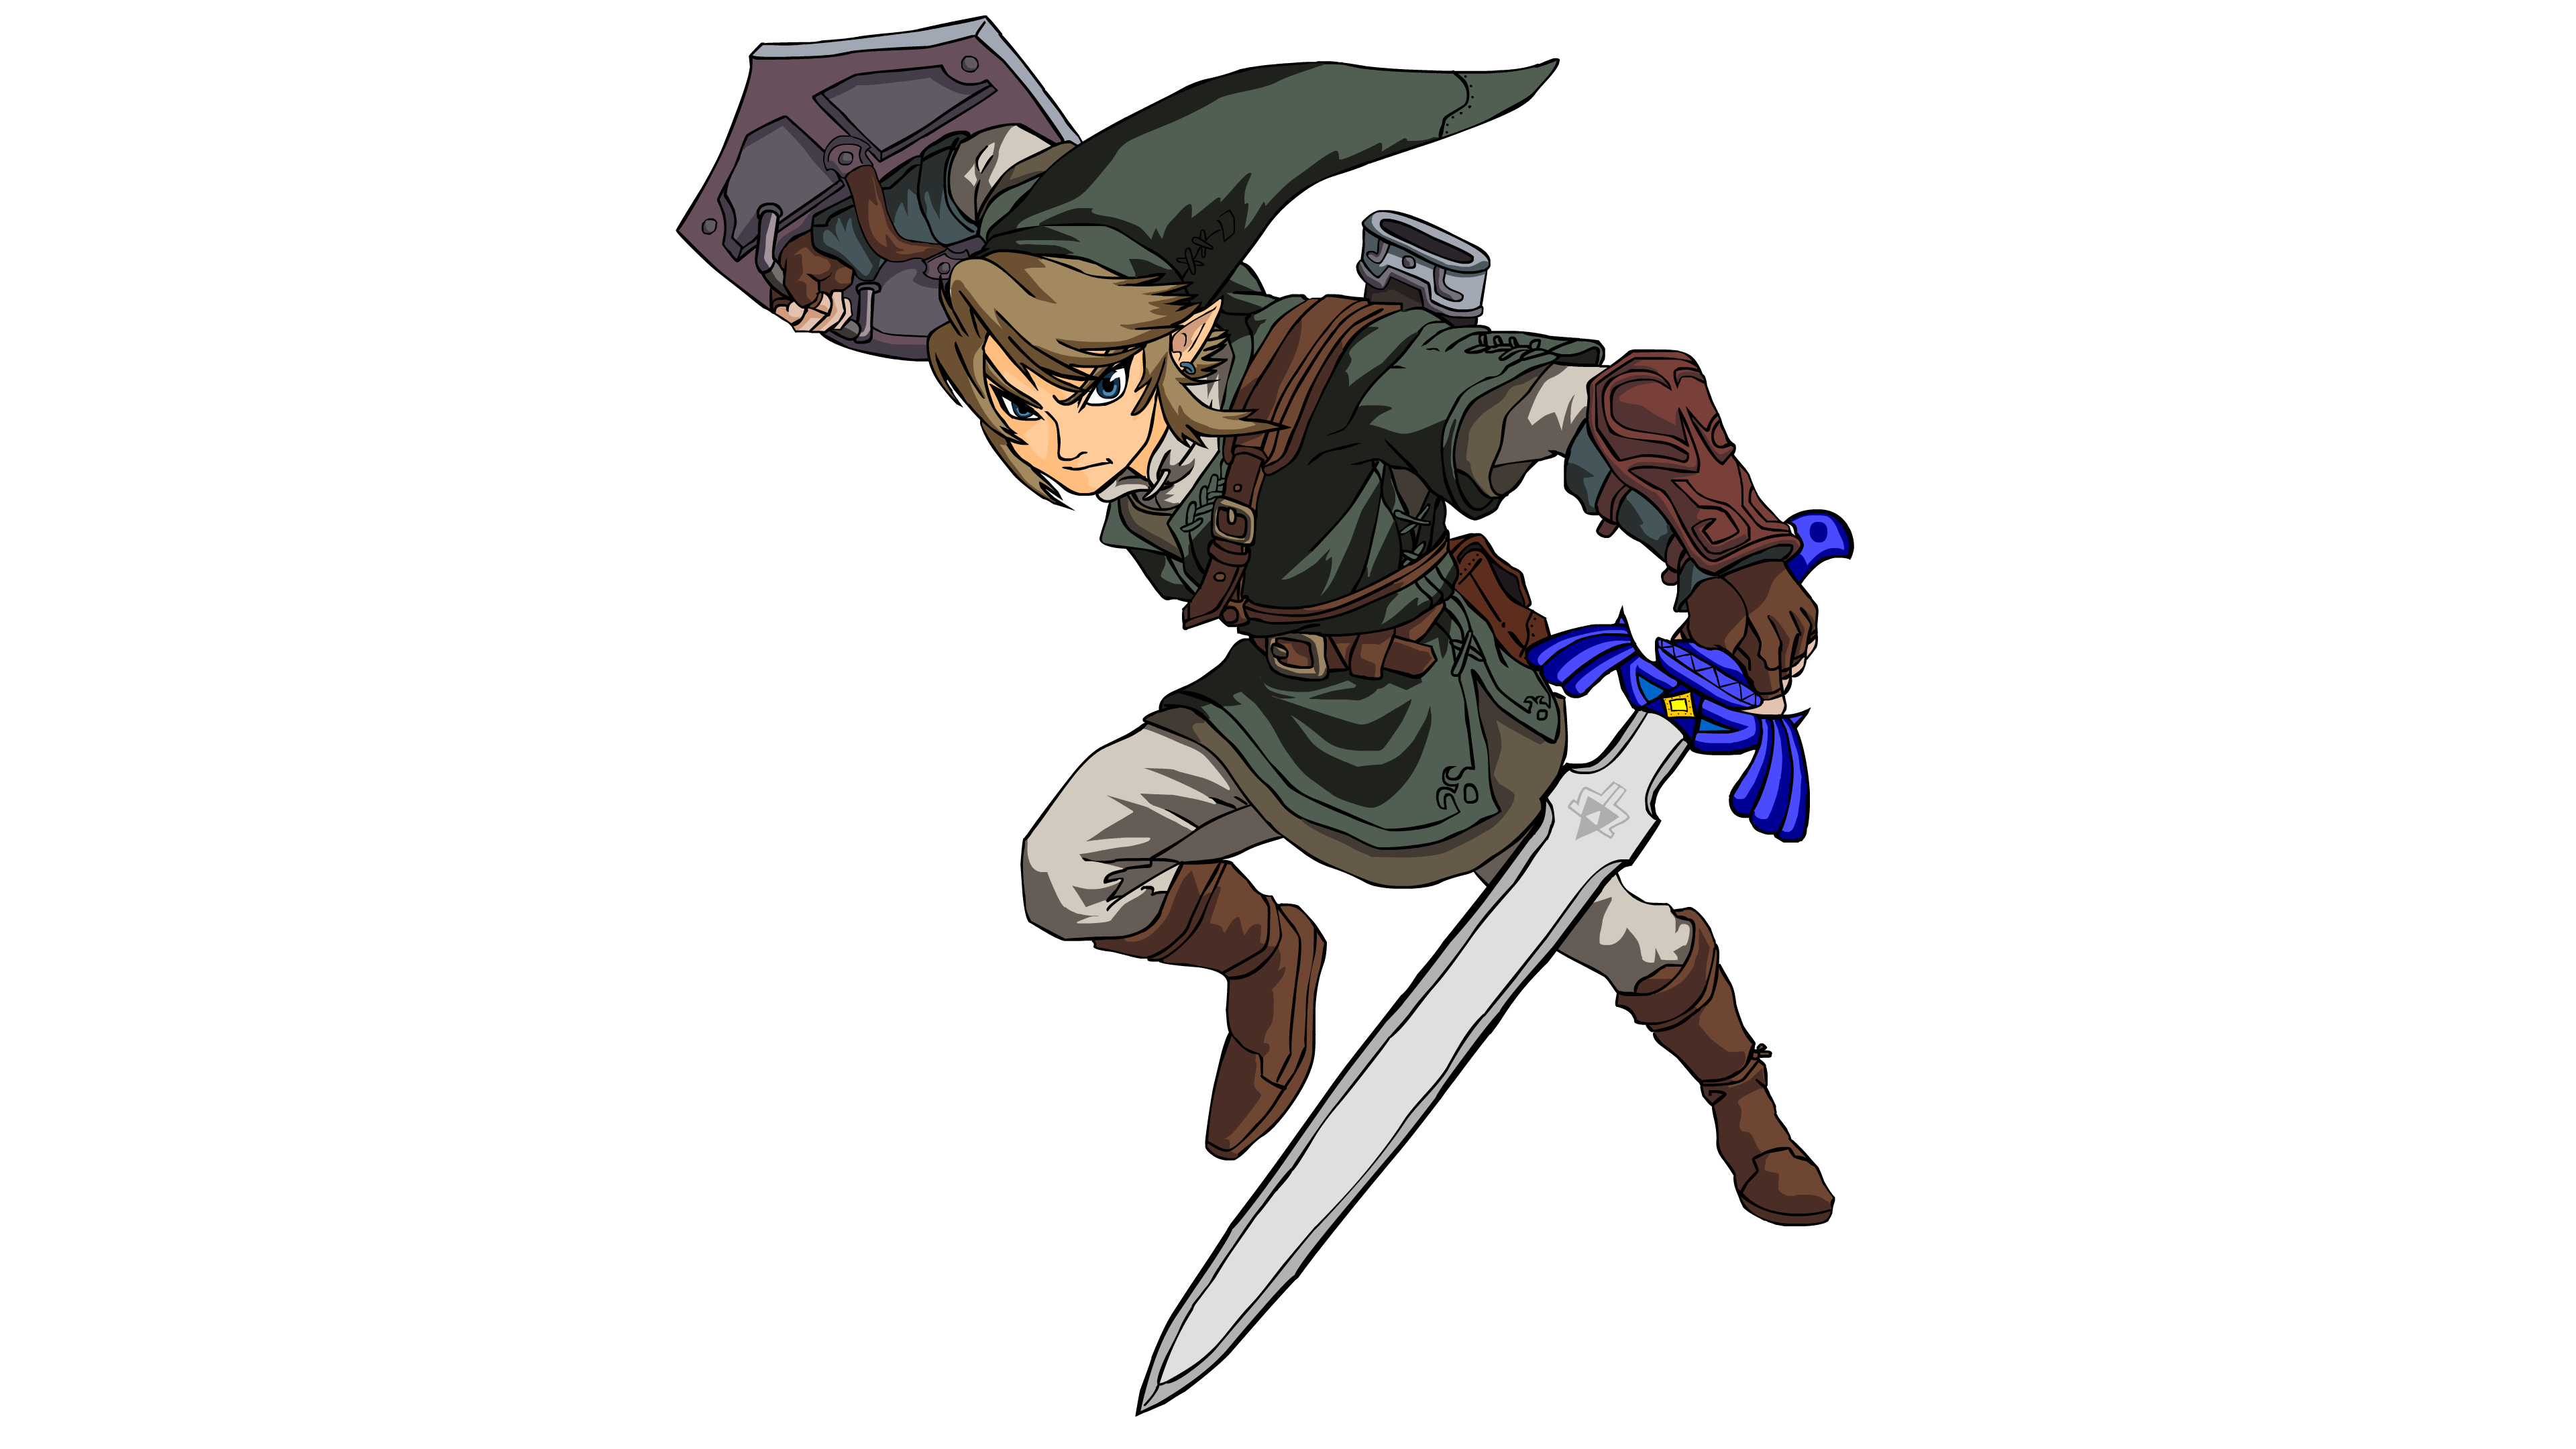 Zelda Link Image PNG Image